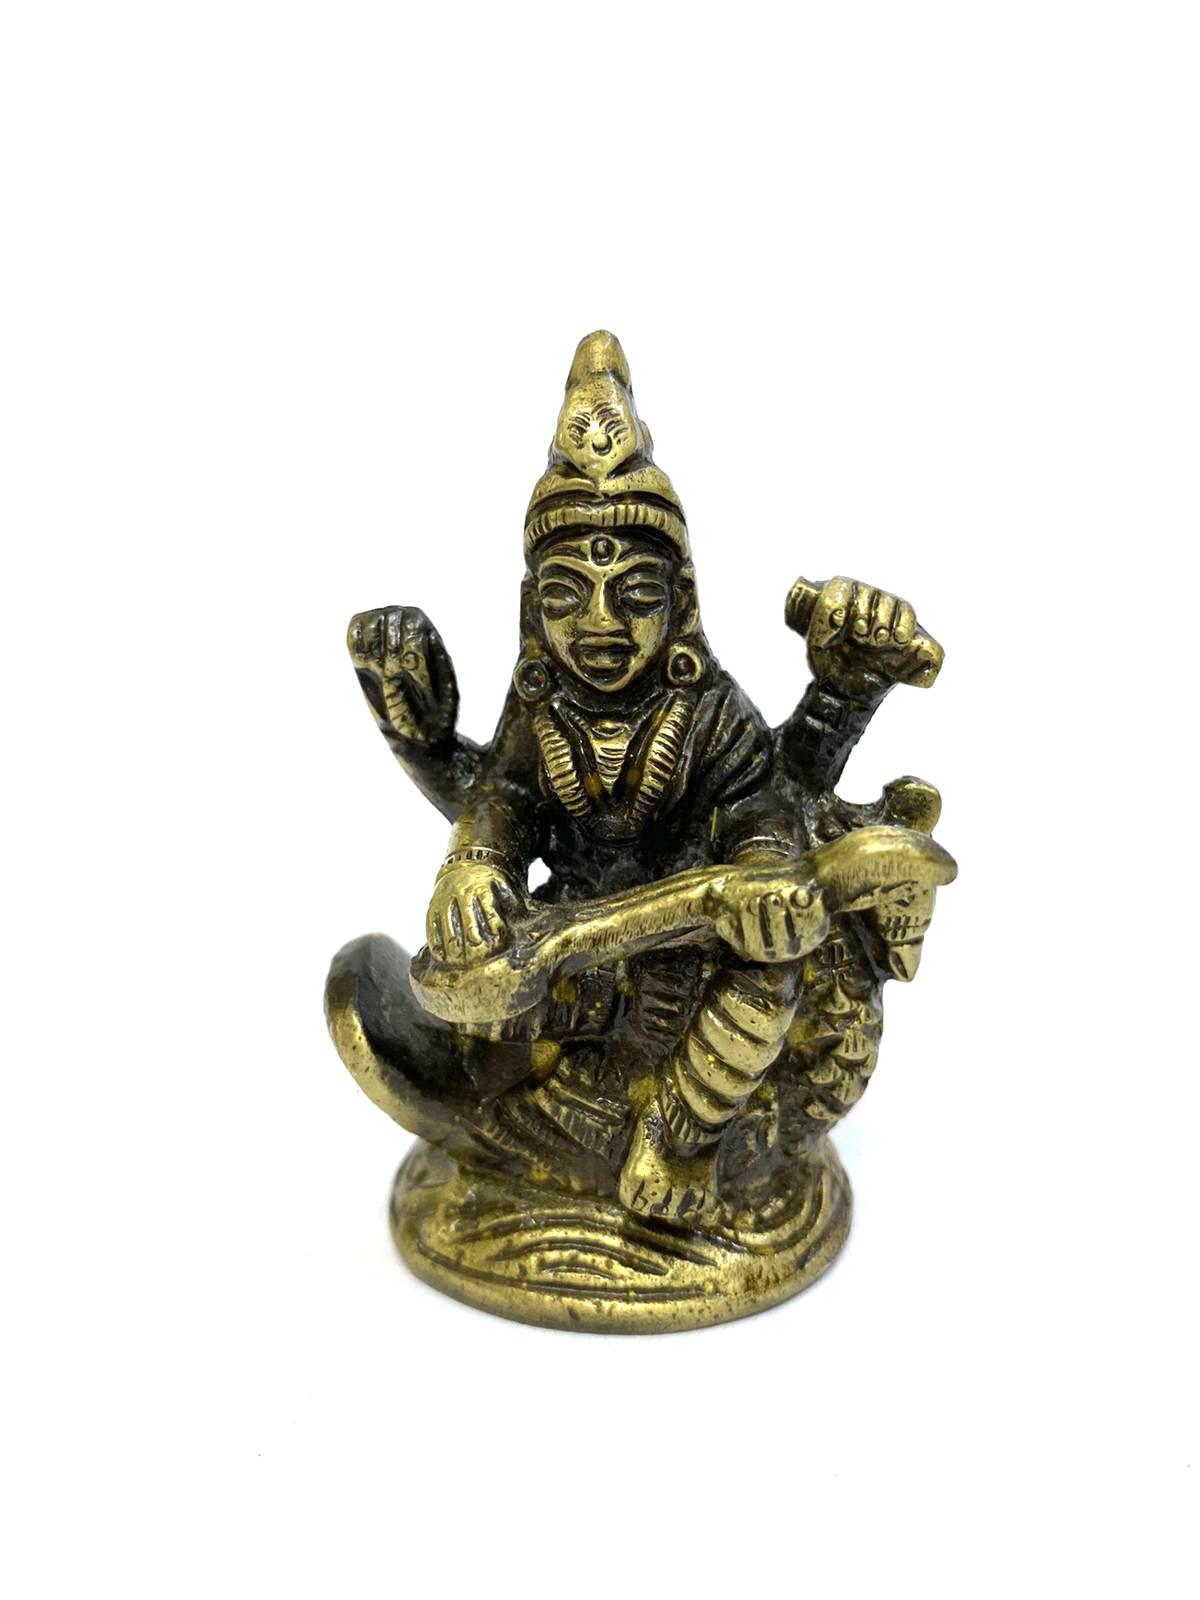 Gift Brass Idols Sarasvati Lakshmi Ganesh Hindu Gods Religious Tamrapatra